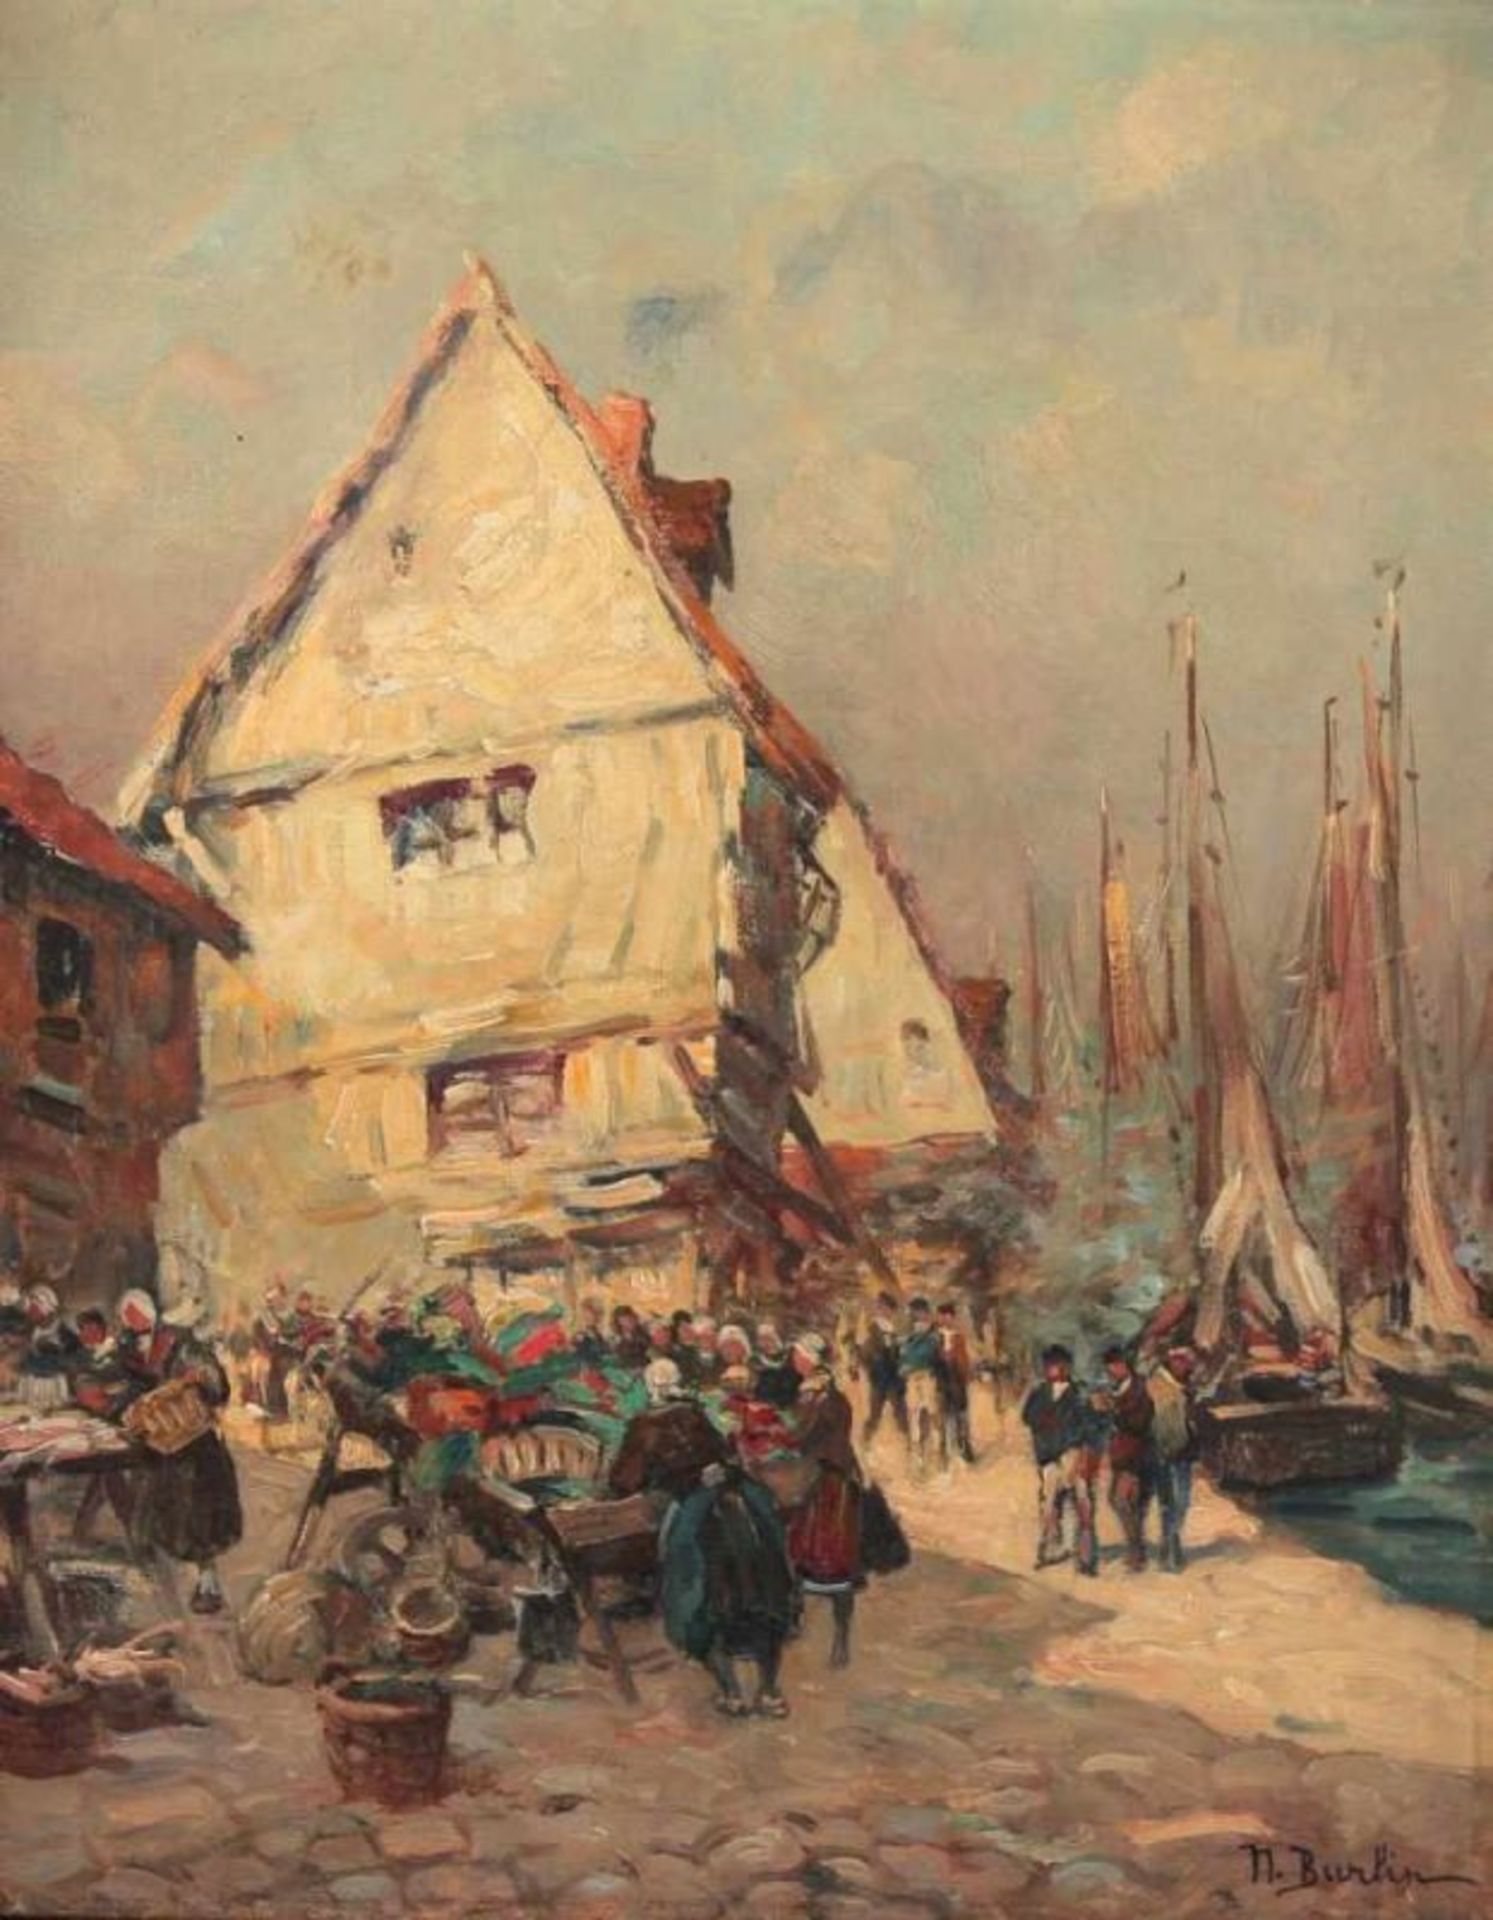 BURLIN, Natalie (1875-1921), "Markttreiben am Hafen", Öl/Lwd., 42 x 33, unten rechts signiert, R. - Bild 2 aus 3